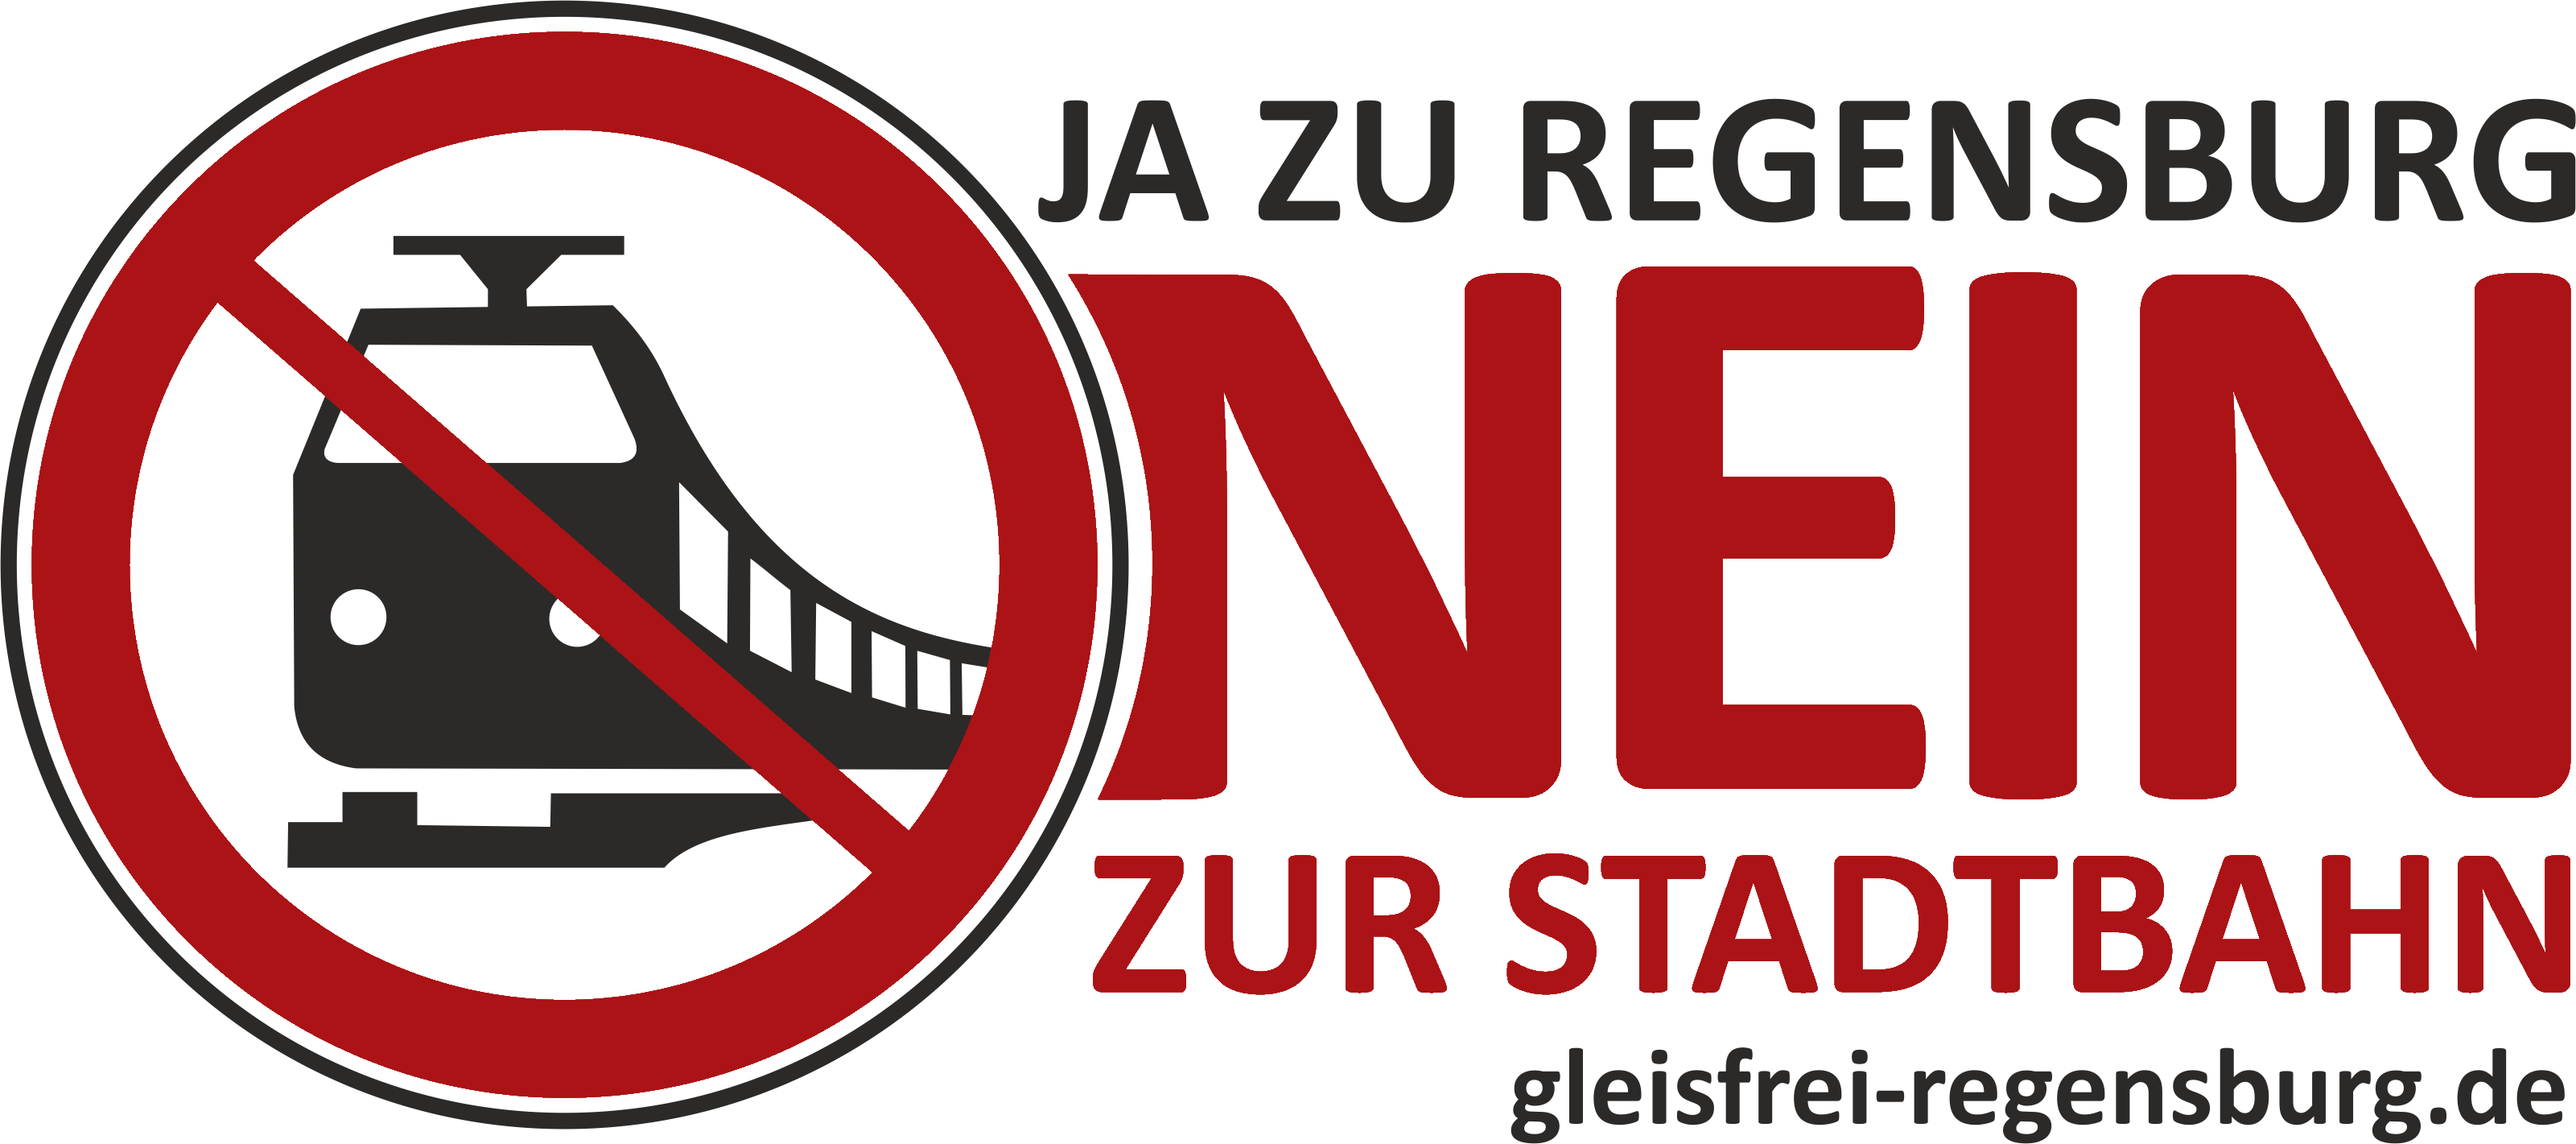 Stadtbahn Regensburg Gegner